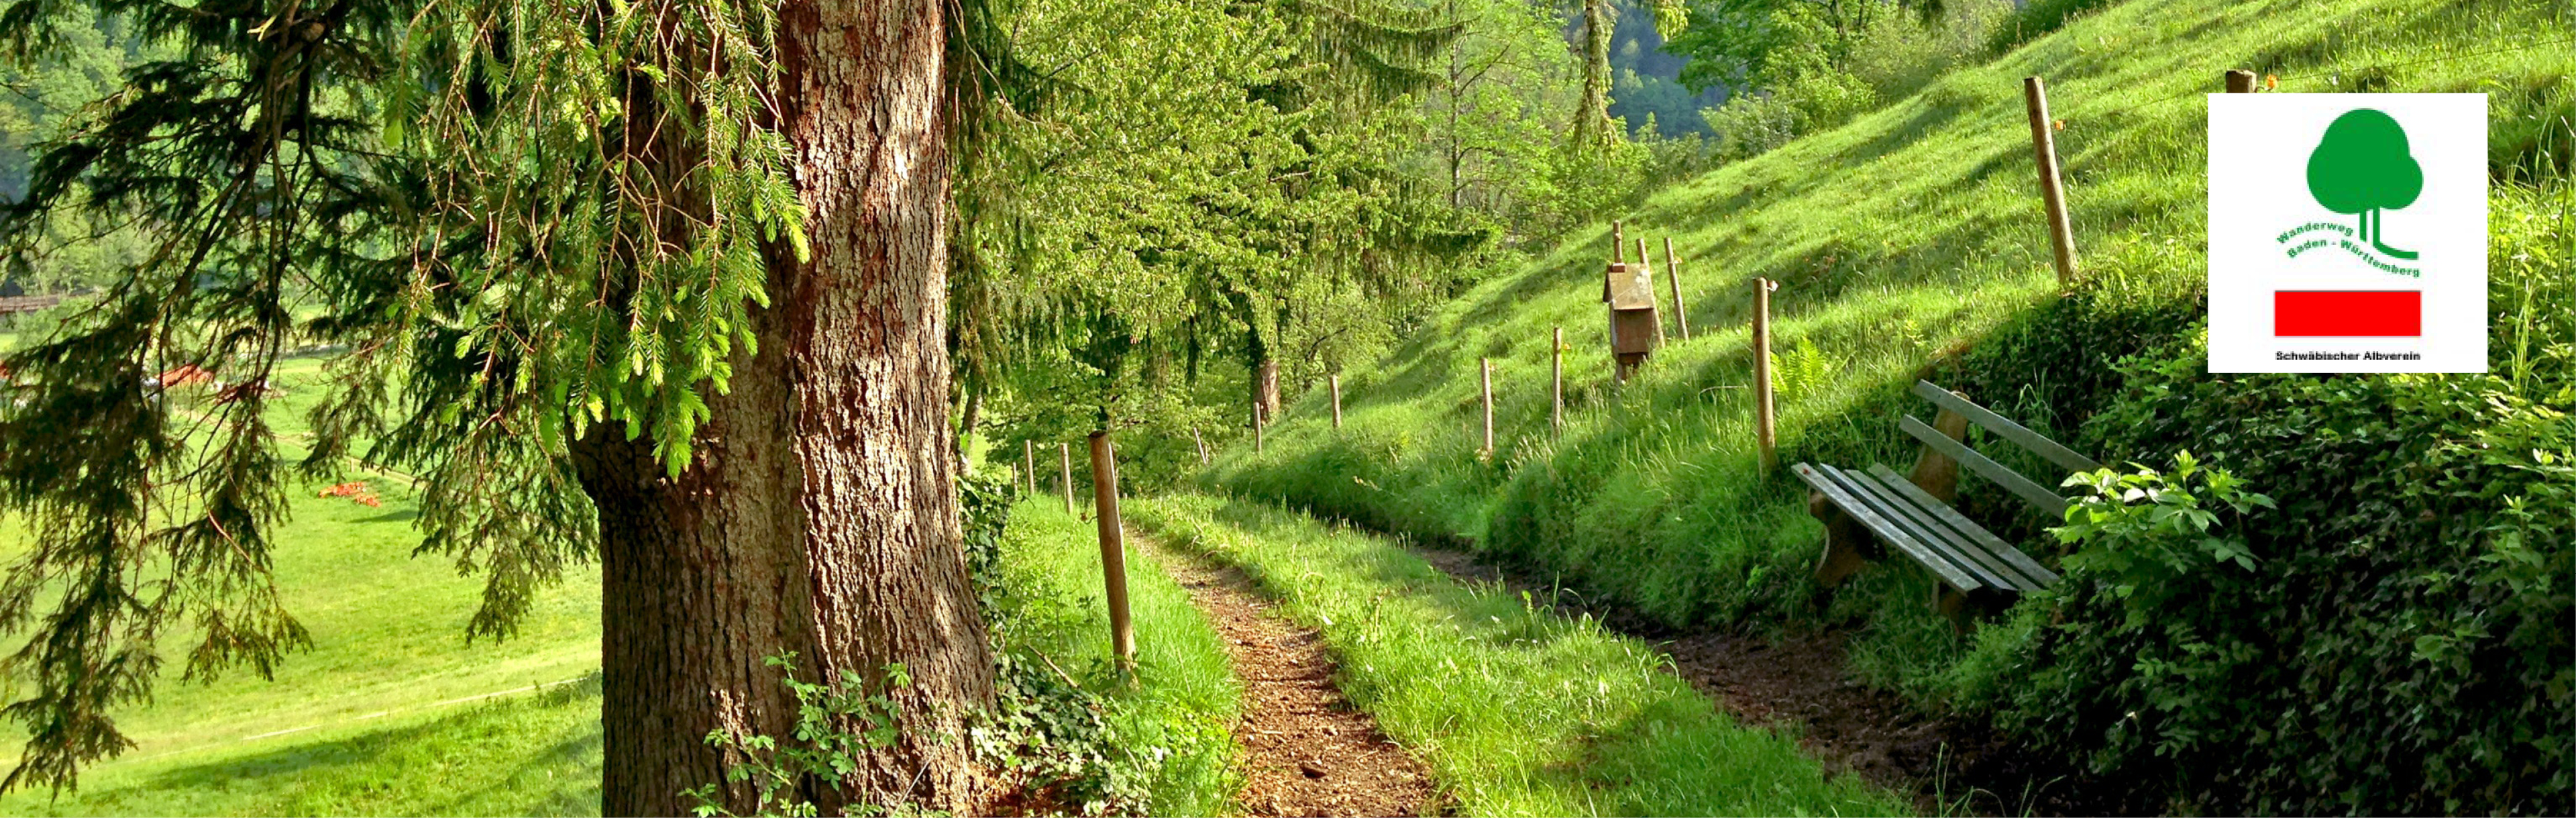 Pfad durch grüne Wiese mit Baum und Holzbank